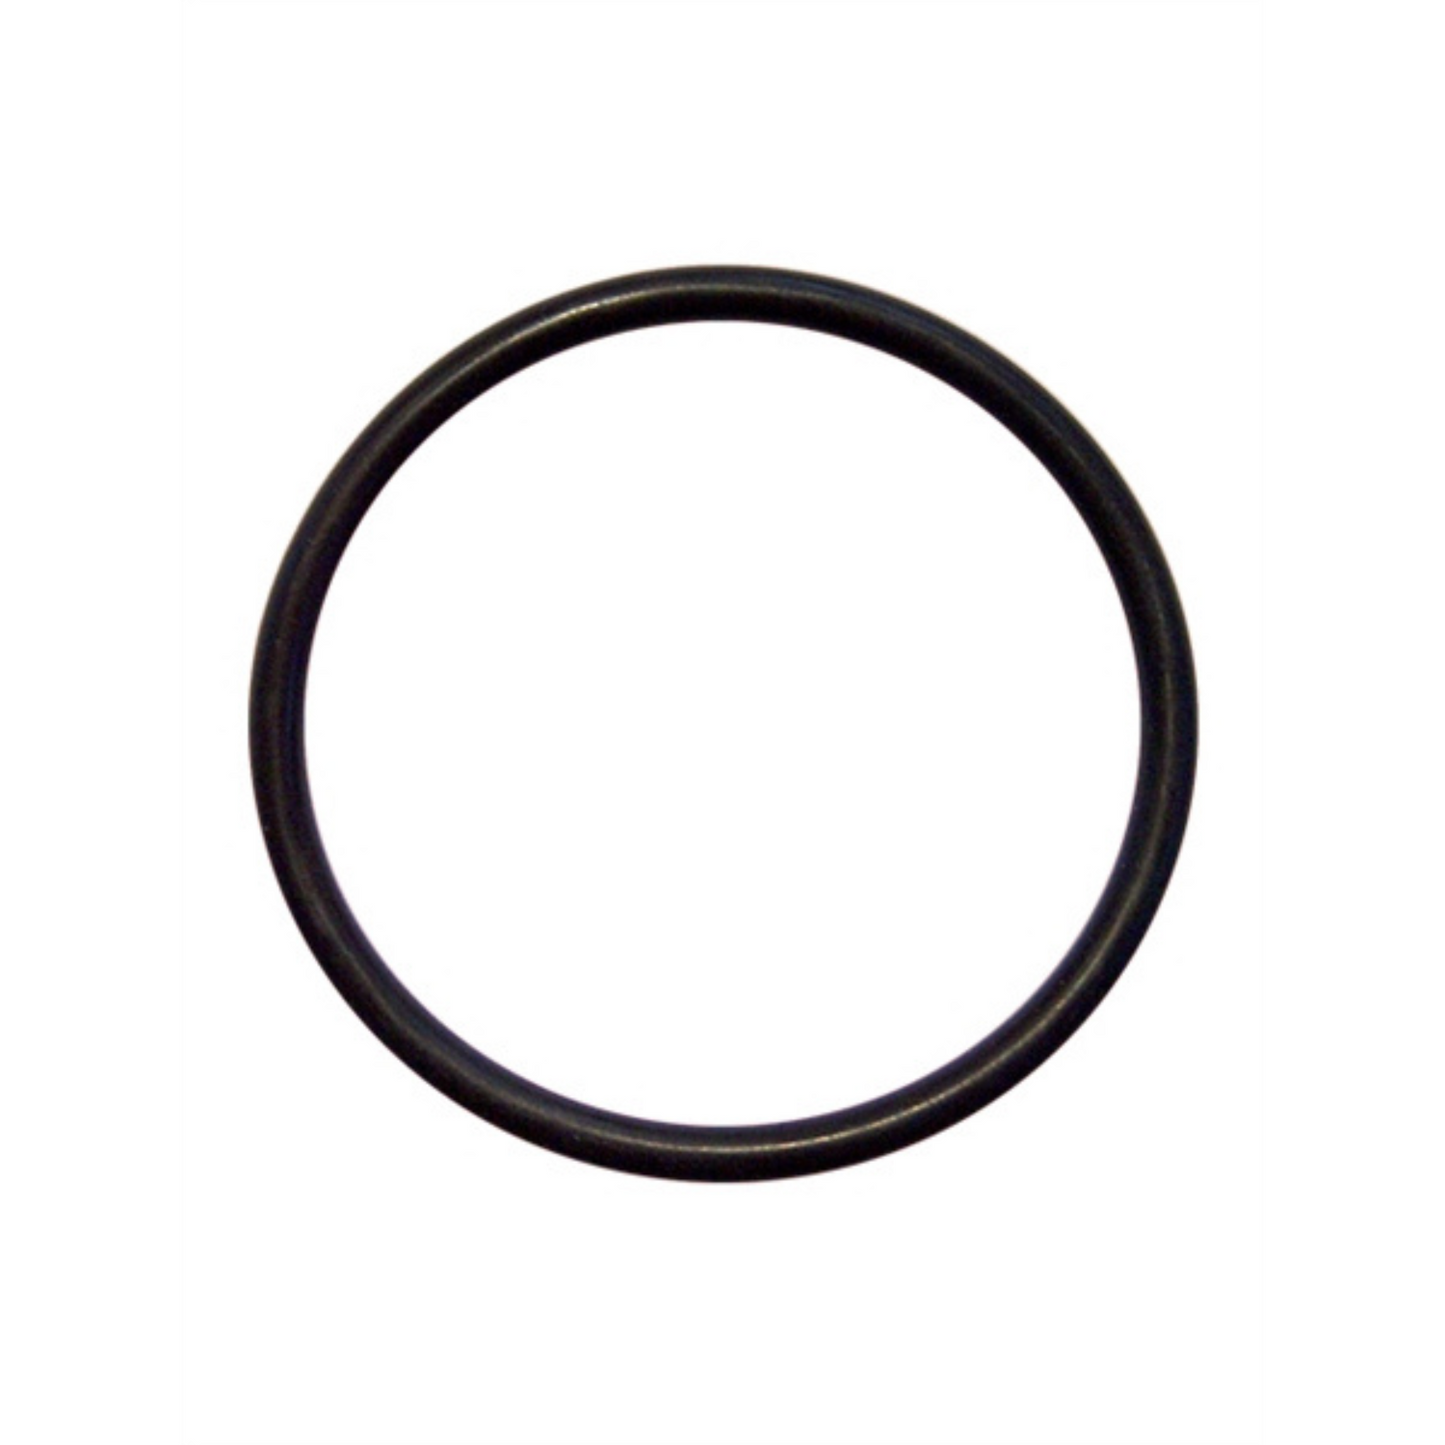 Deze dunne zwarte cock ring met een diameter van 45 mm, van Mister B en te koop bij Flavourez.